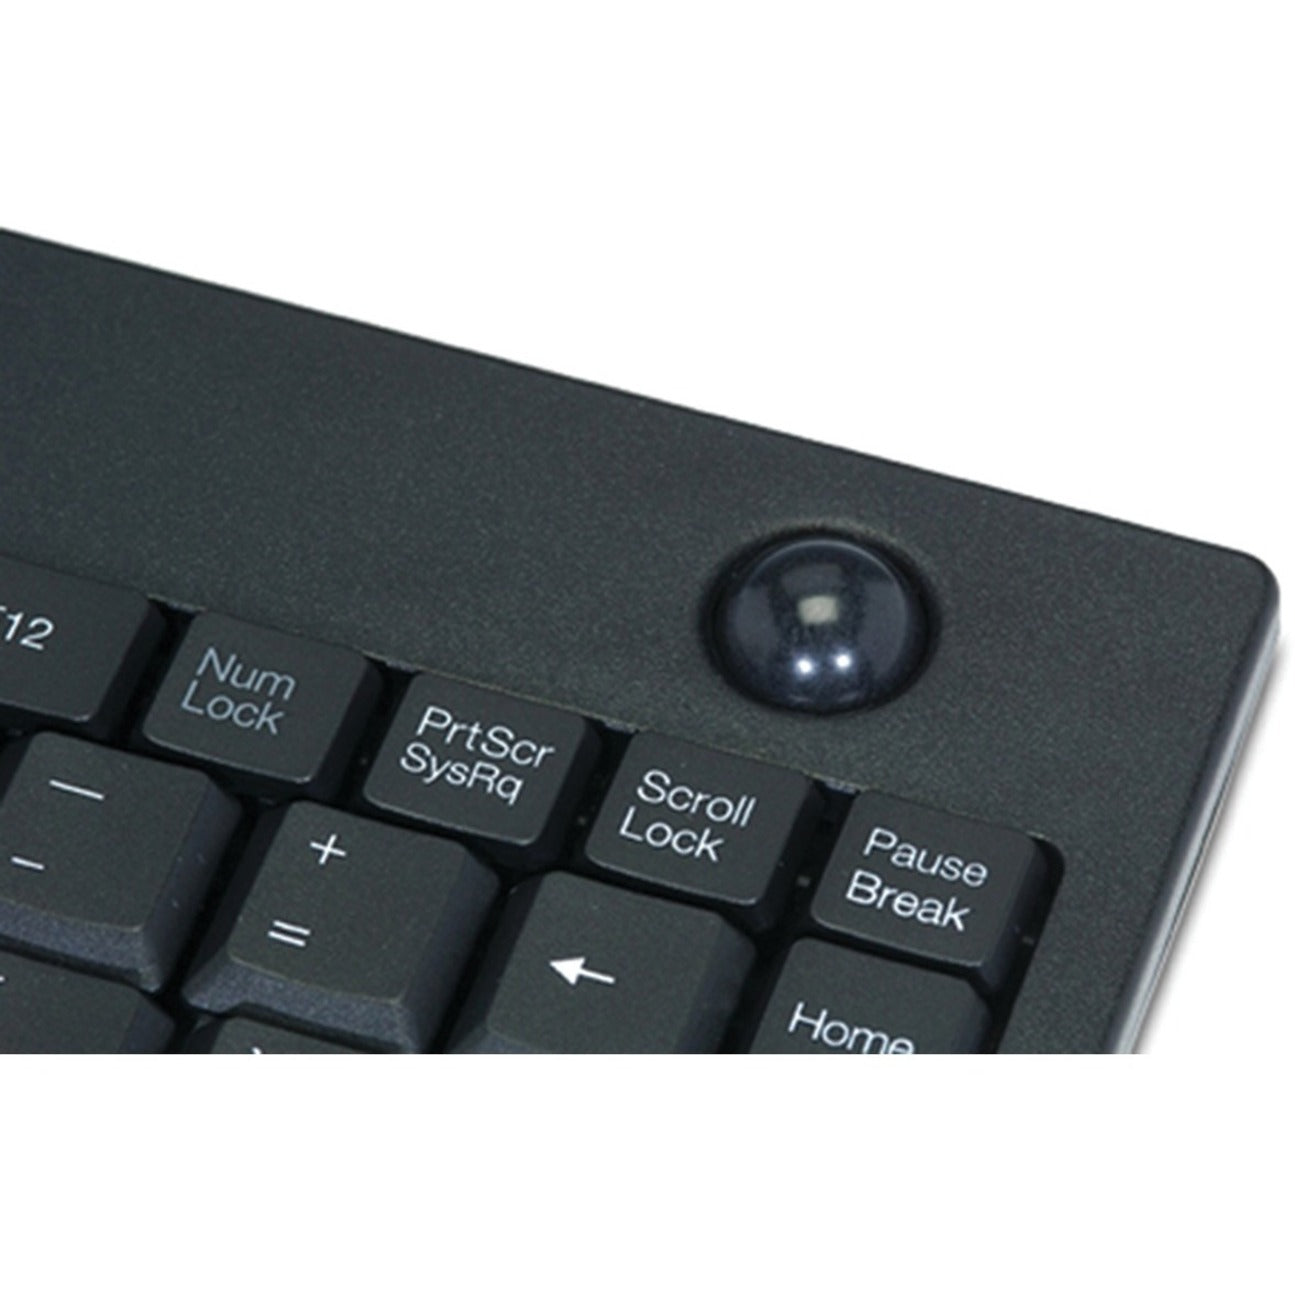 Adesso WKB-3100UB Wireless Mini Trackball Keyboard, USB, 87 Keys